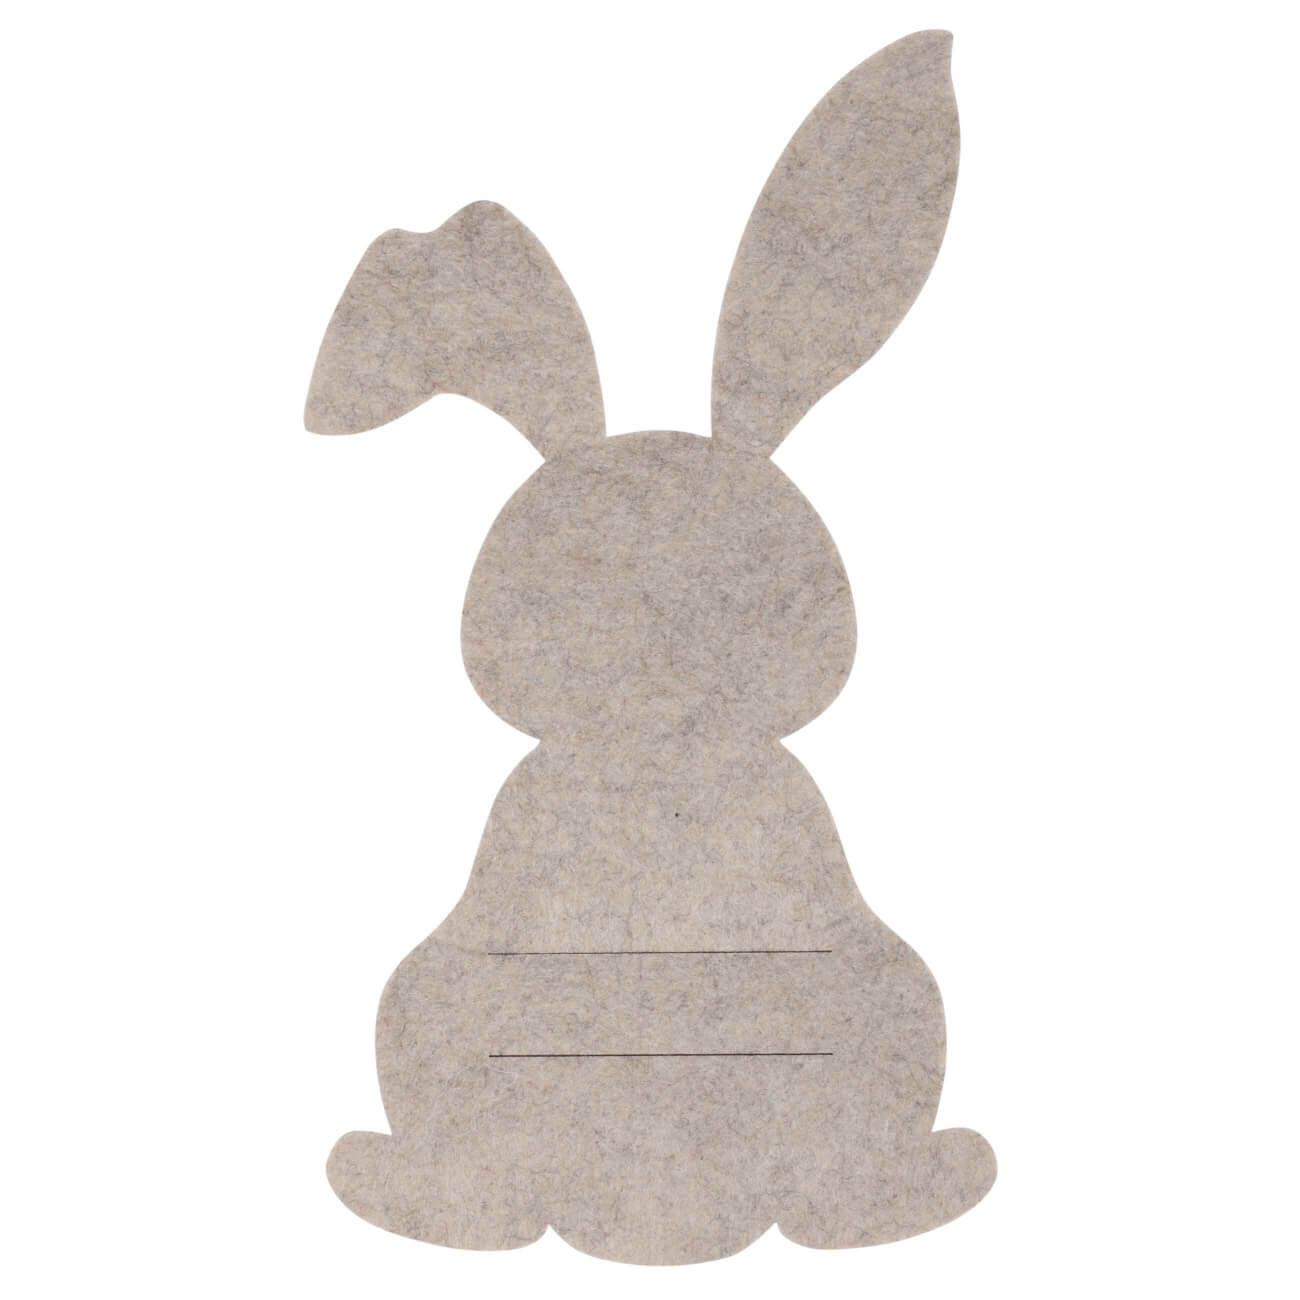 салфетка под приборы 38 см полиэстер круглая белая кролик rotary print Карман для столовых приборов, 25х14 см, фетр, бежевый, Кролик, Felt mat